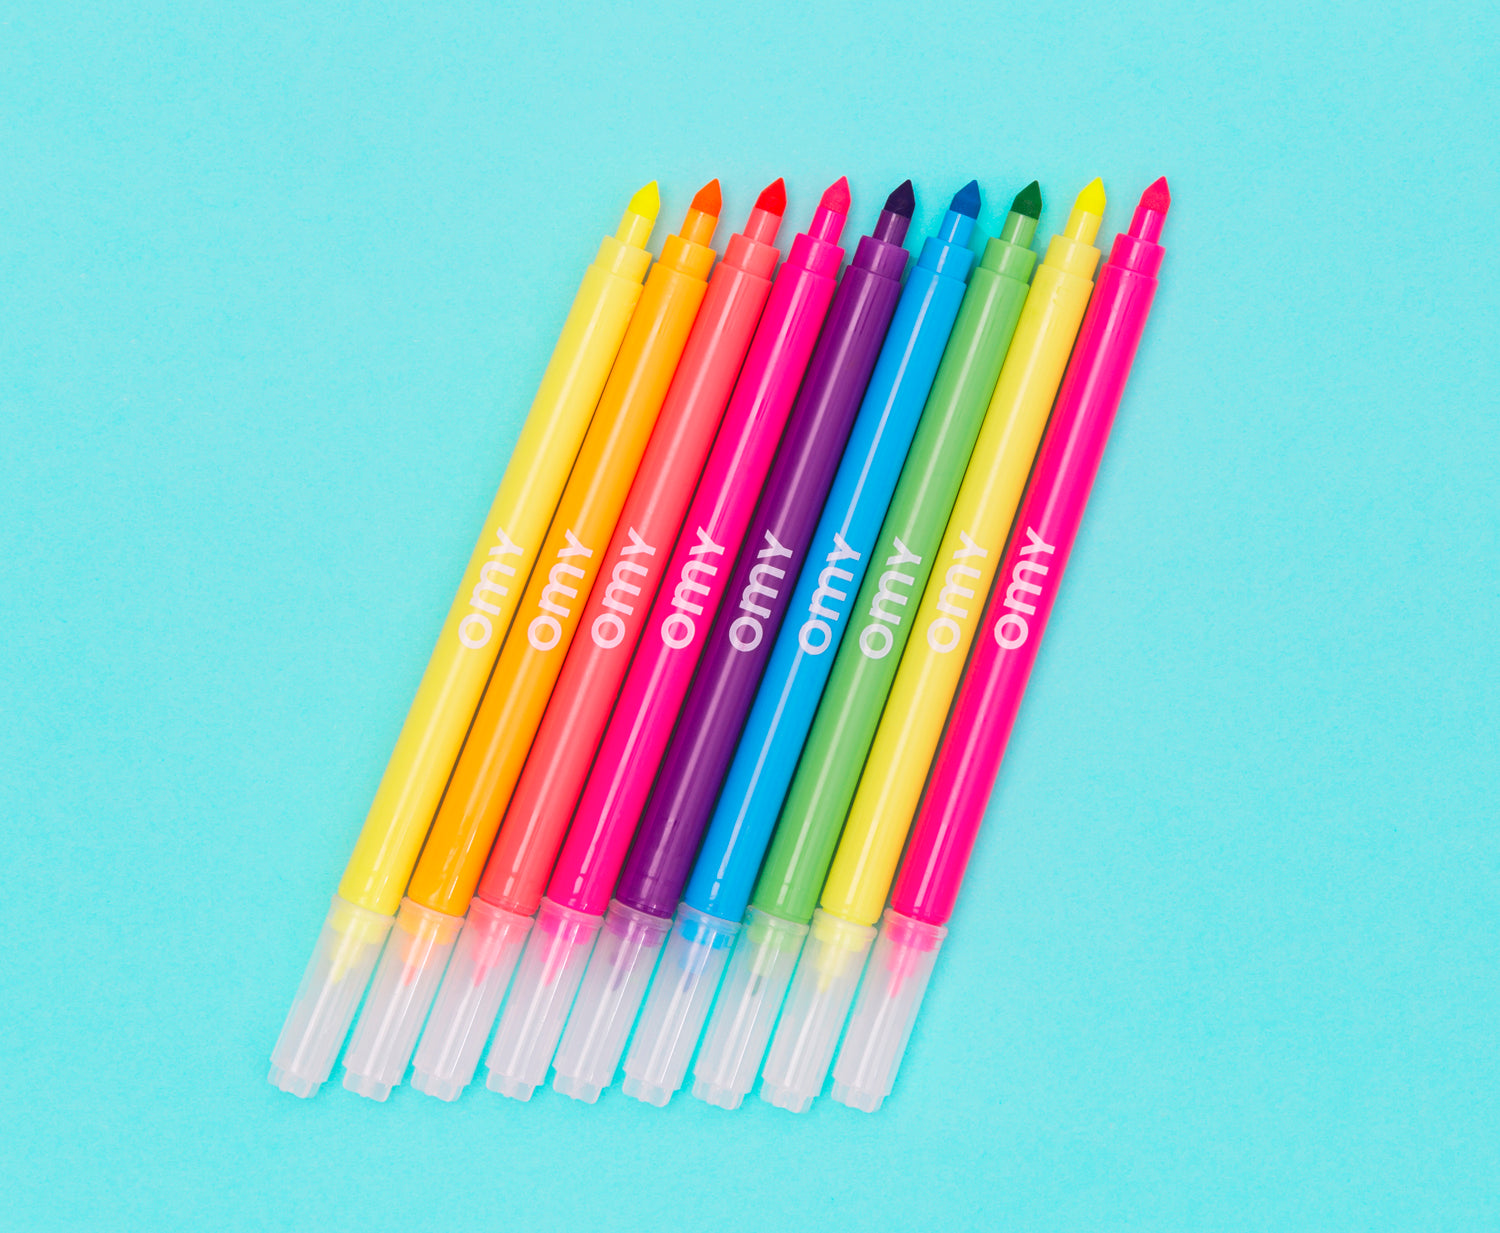 Neon Felt Tip Pens - 9 colors